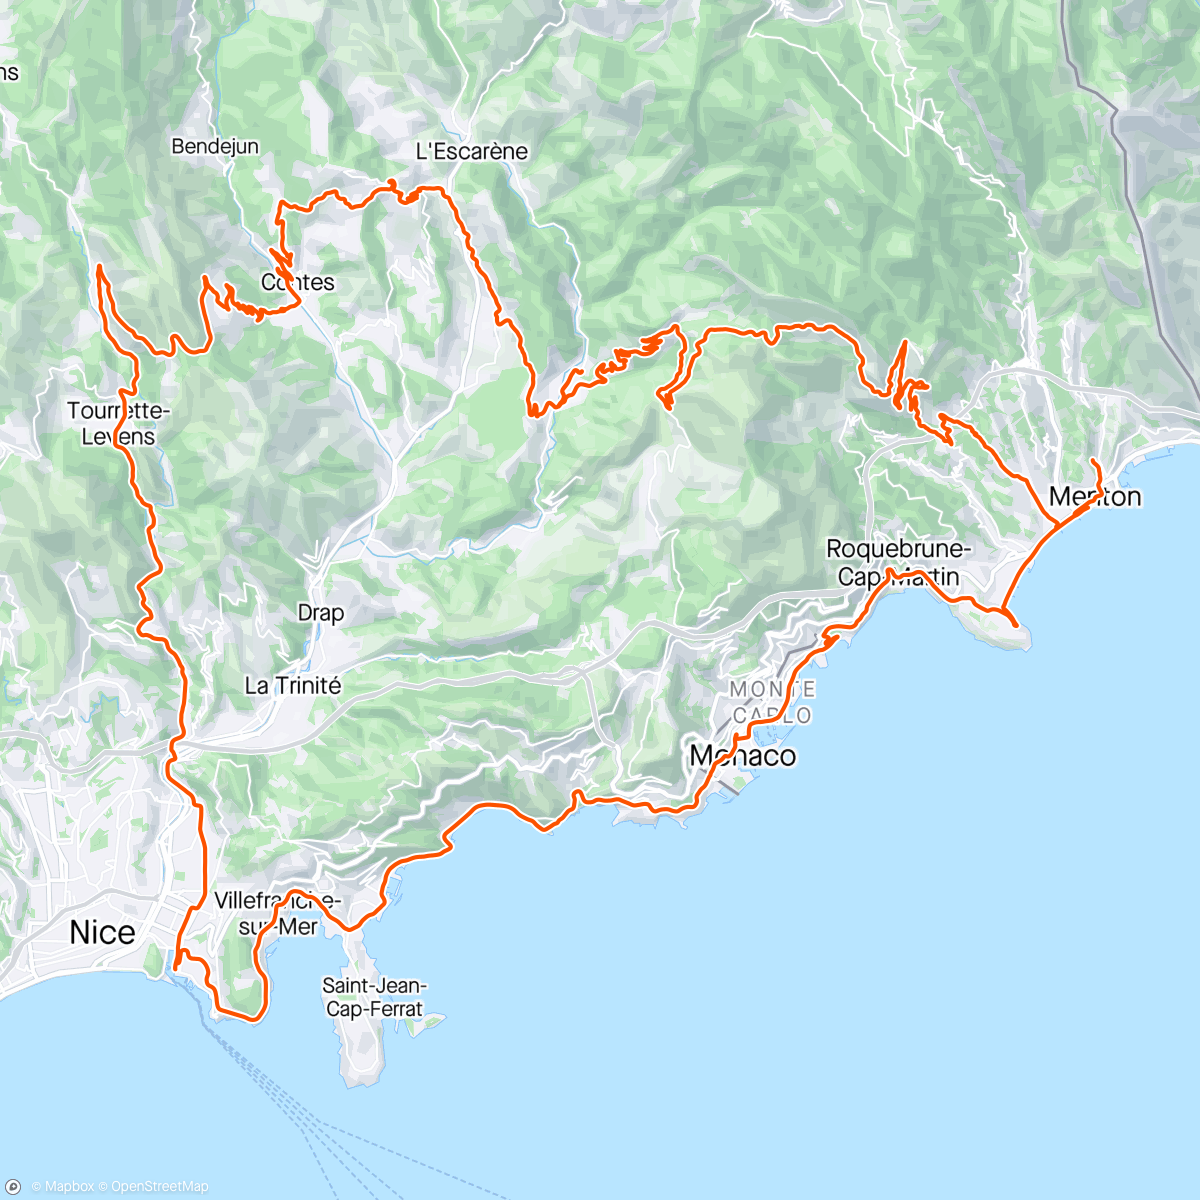 Map of the activity, Menton dag 3 - Col de Madone, Col de Chateauneauf, Nice og Monaco